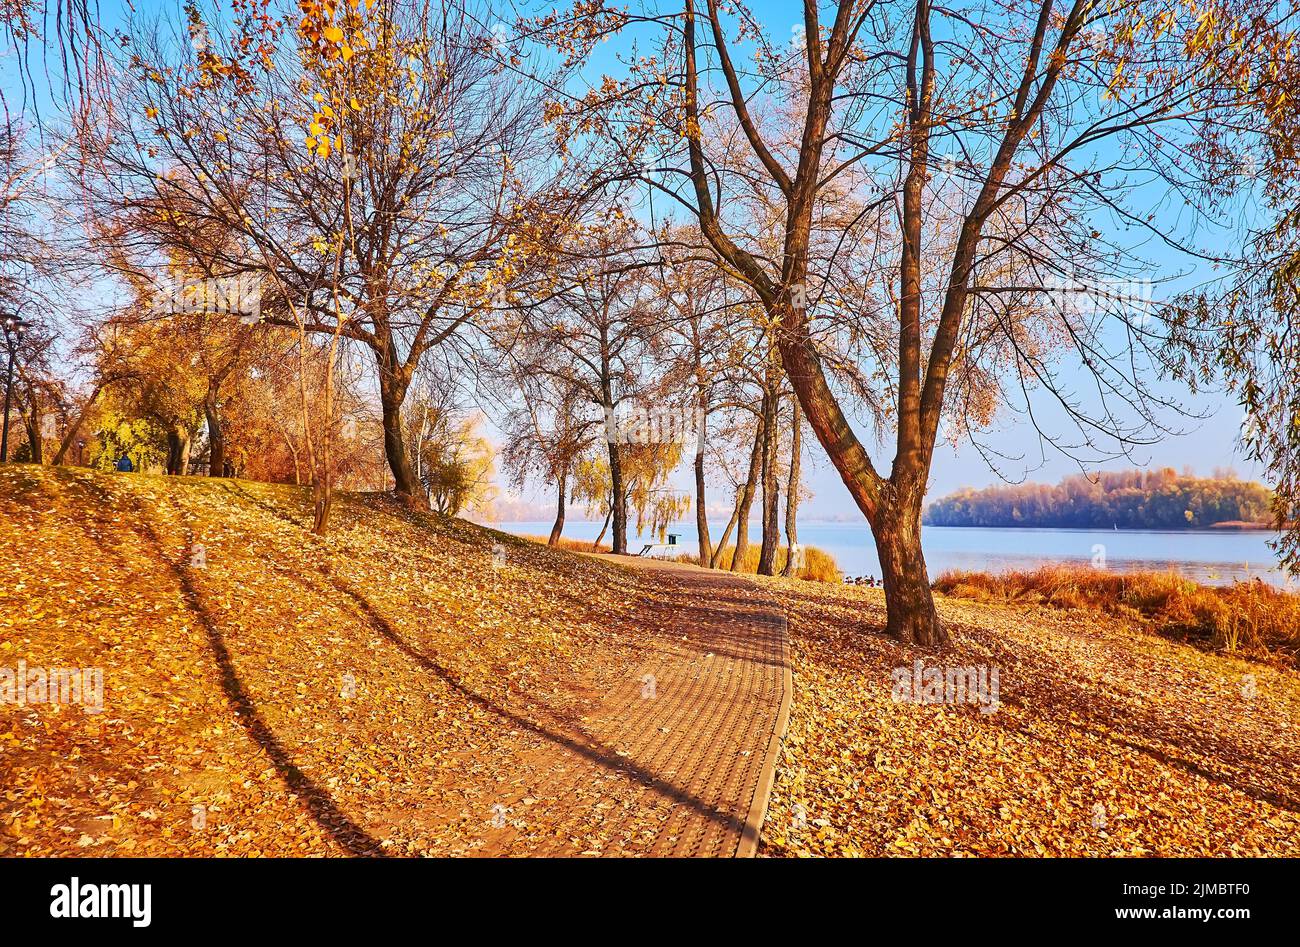 Il tappeto di fogliame giallo secco sul terreno in autunno lungo il fiume Natalka parco con il fiume Dnieper in background, Obolon, Kiev, Ucraina Foto Stock